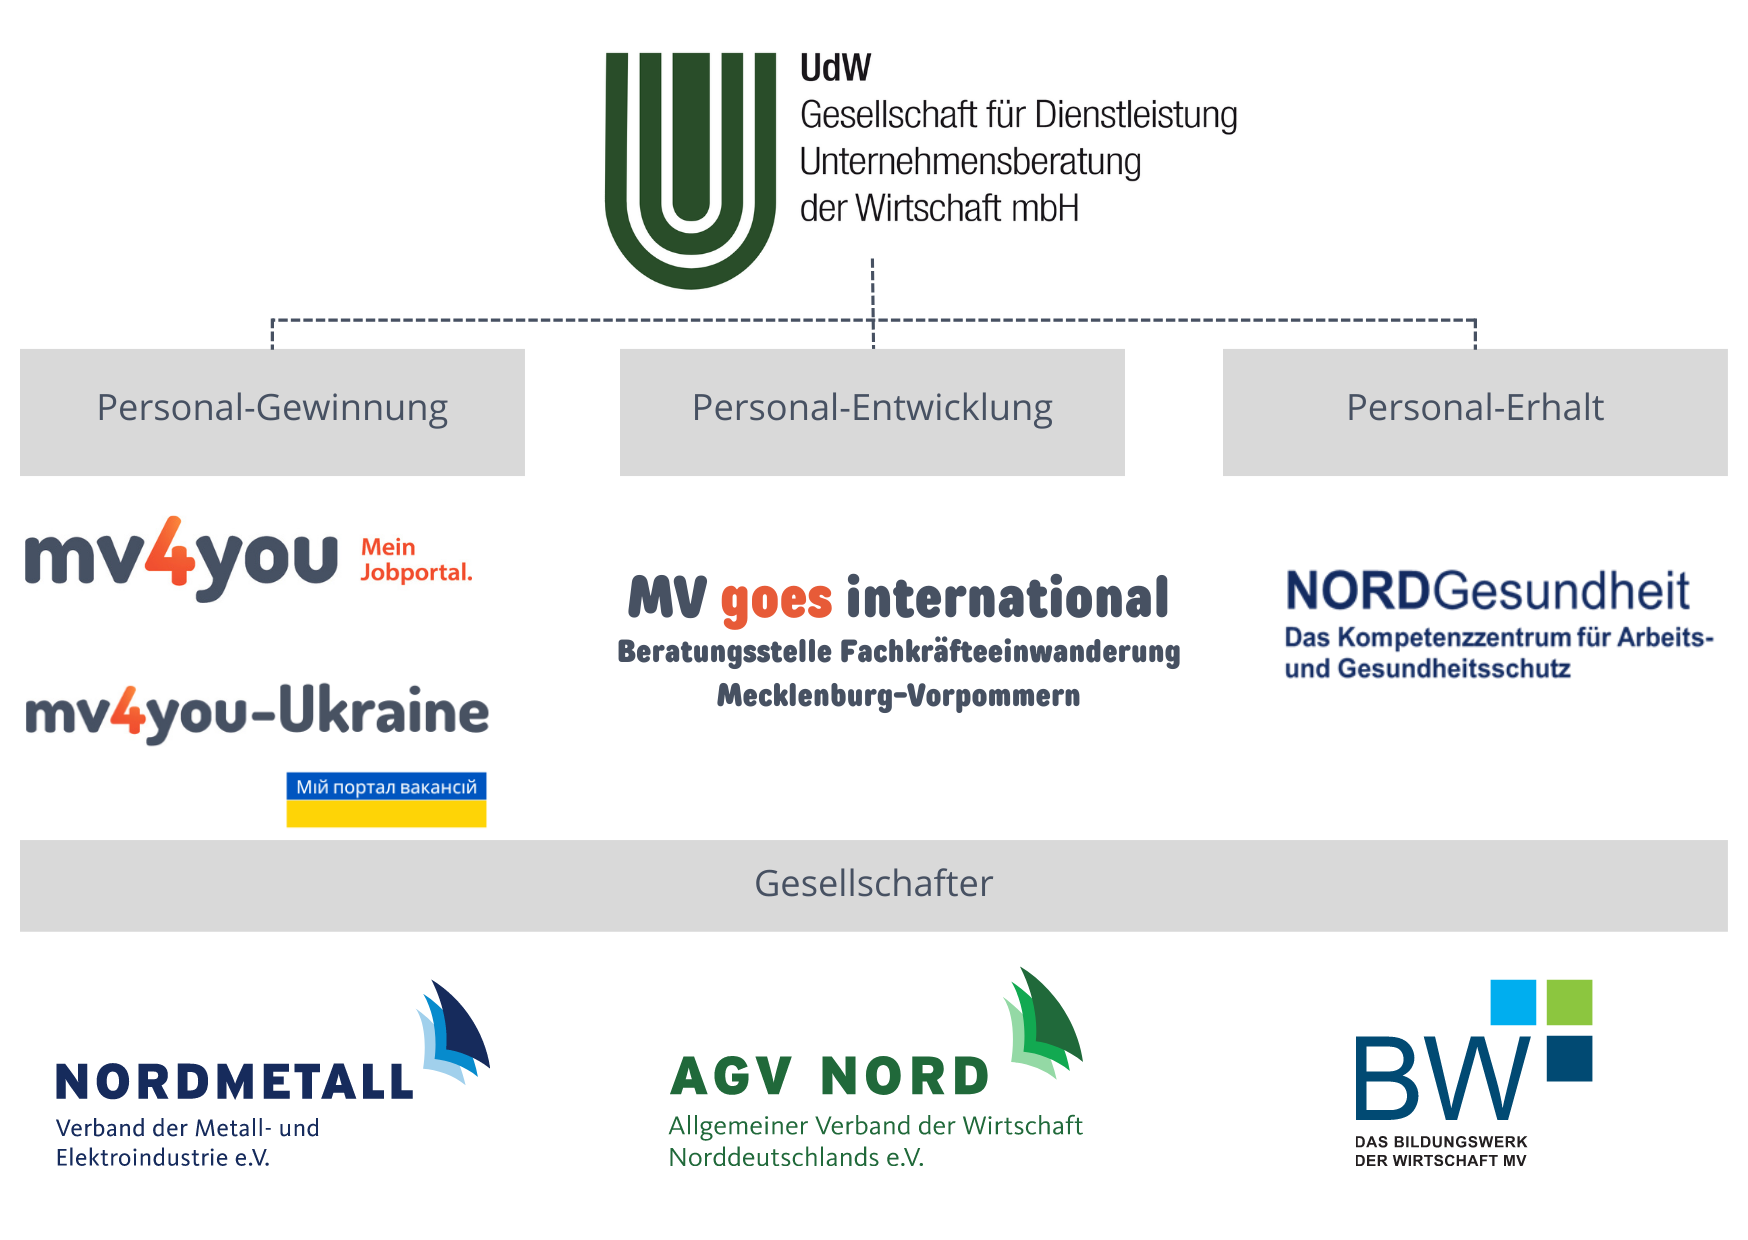 Organigramm der UdW GmbH